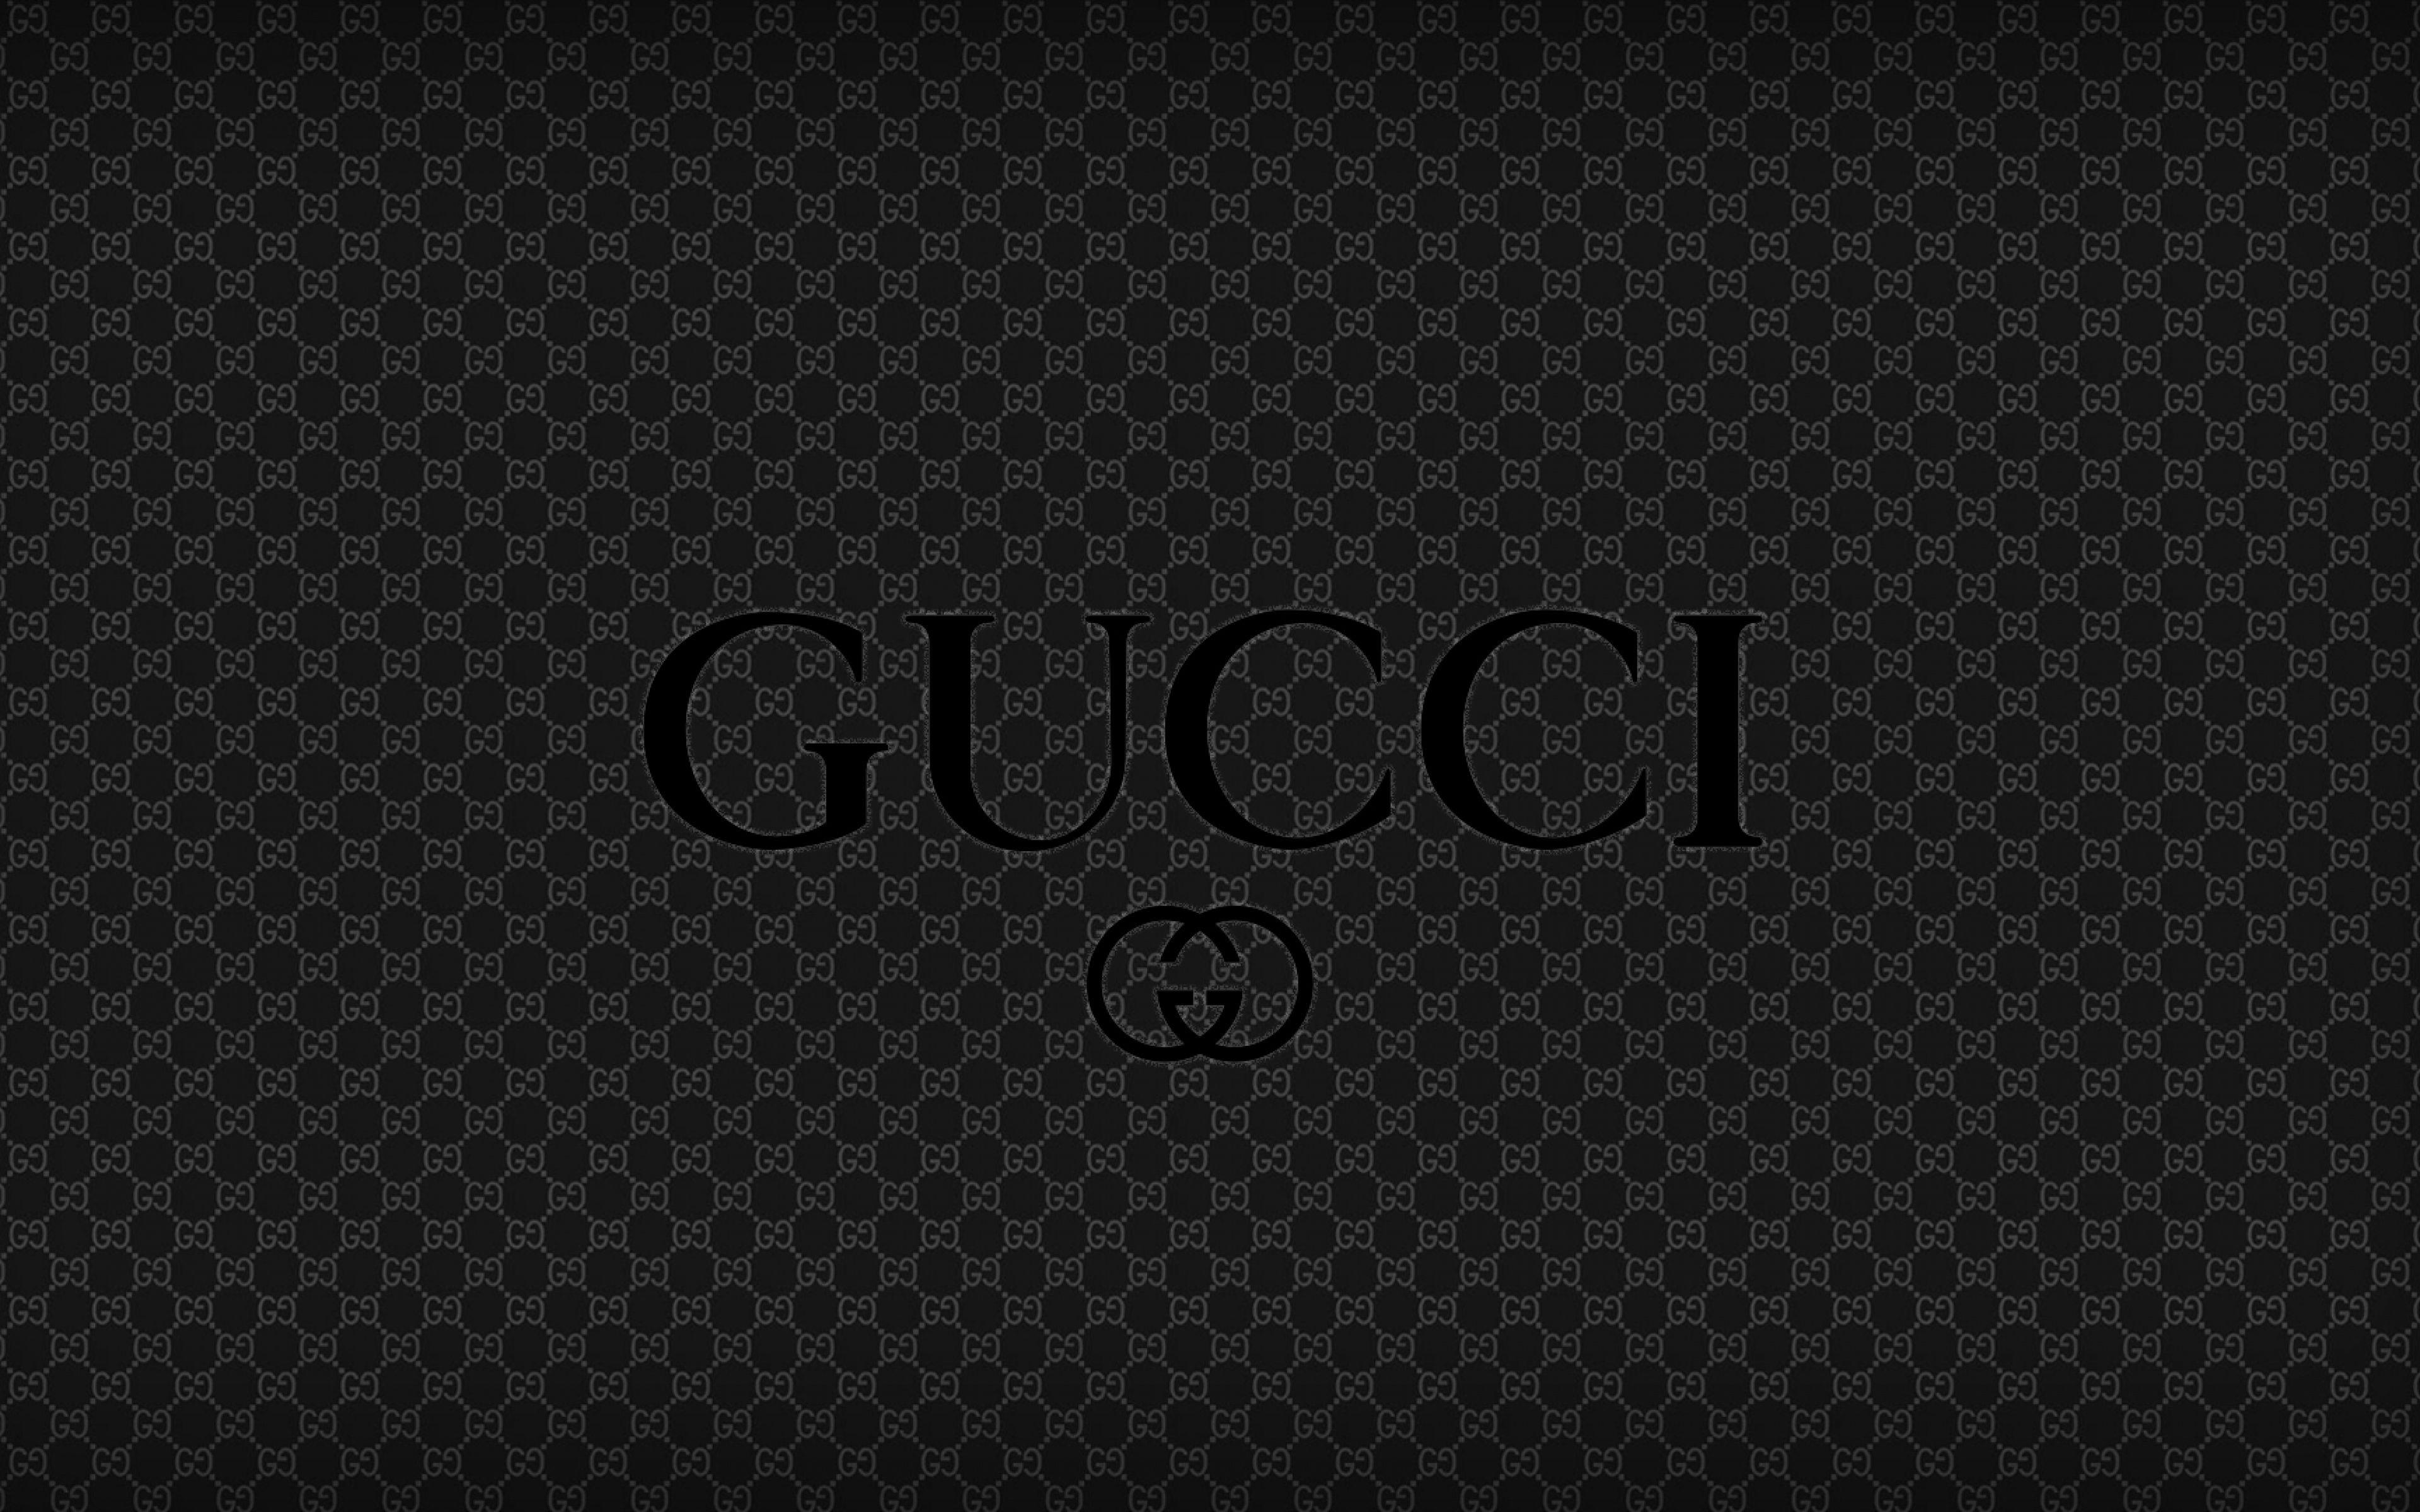 Với những hình nền Gucci đầy chất lượng và đẳng cấp, bạn sẽ thật sự hài lòng khi sử dụng cho chiếc điện thoại của mình. Tại trang web của chúng tôi, bạn có thể tìm thấy những thiết kế độc đáo, in họa tiết hay logo Gucci tinh tế nhất, chắc chắn sẽ khiến màn hình của bạn thêm phần lung linh.